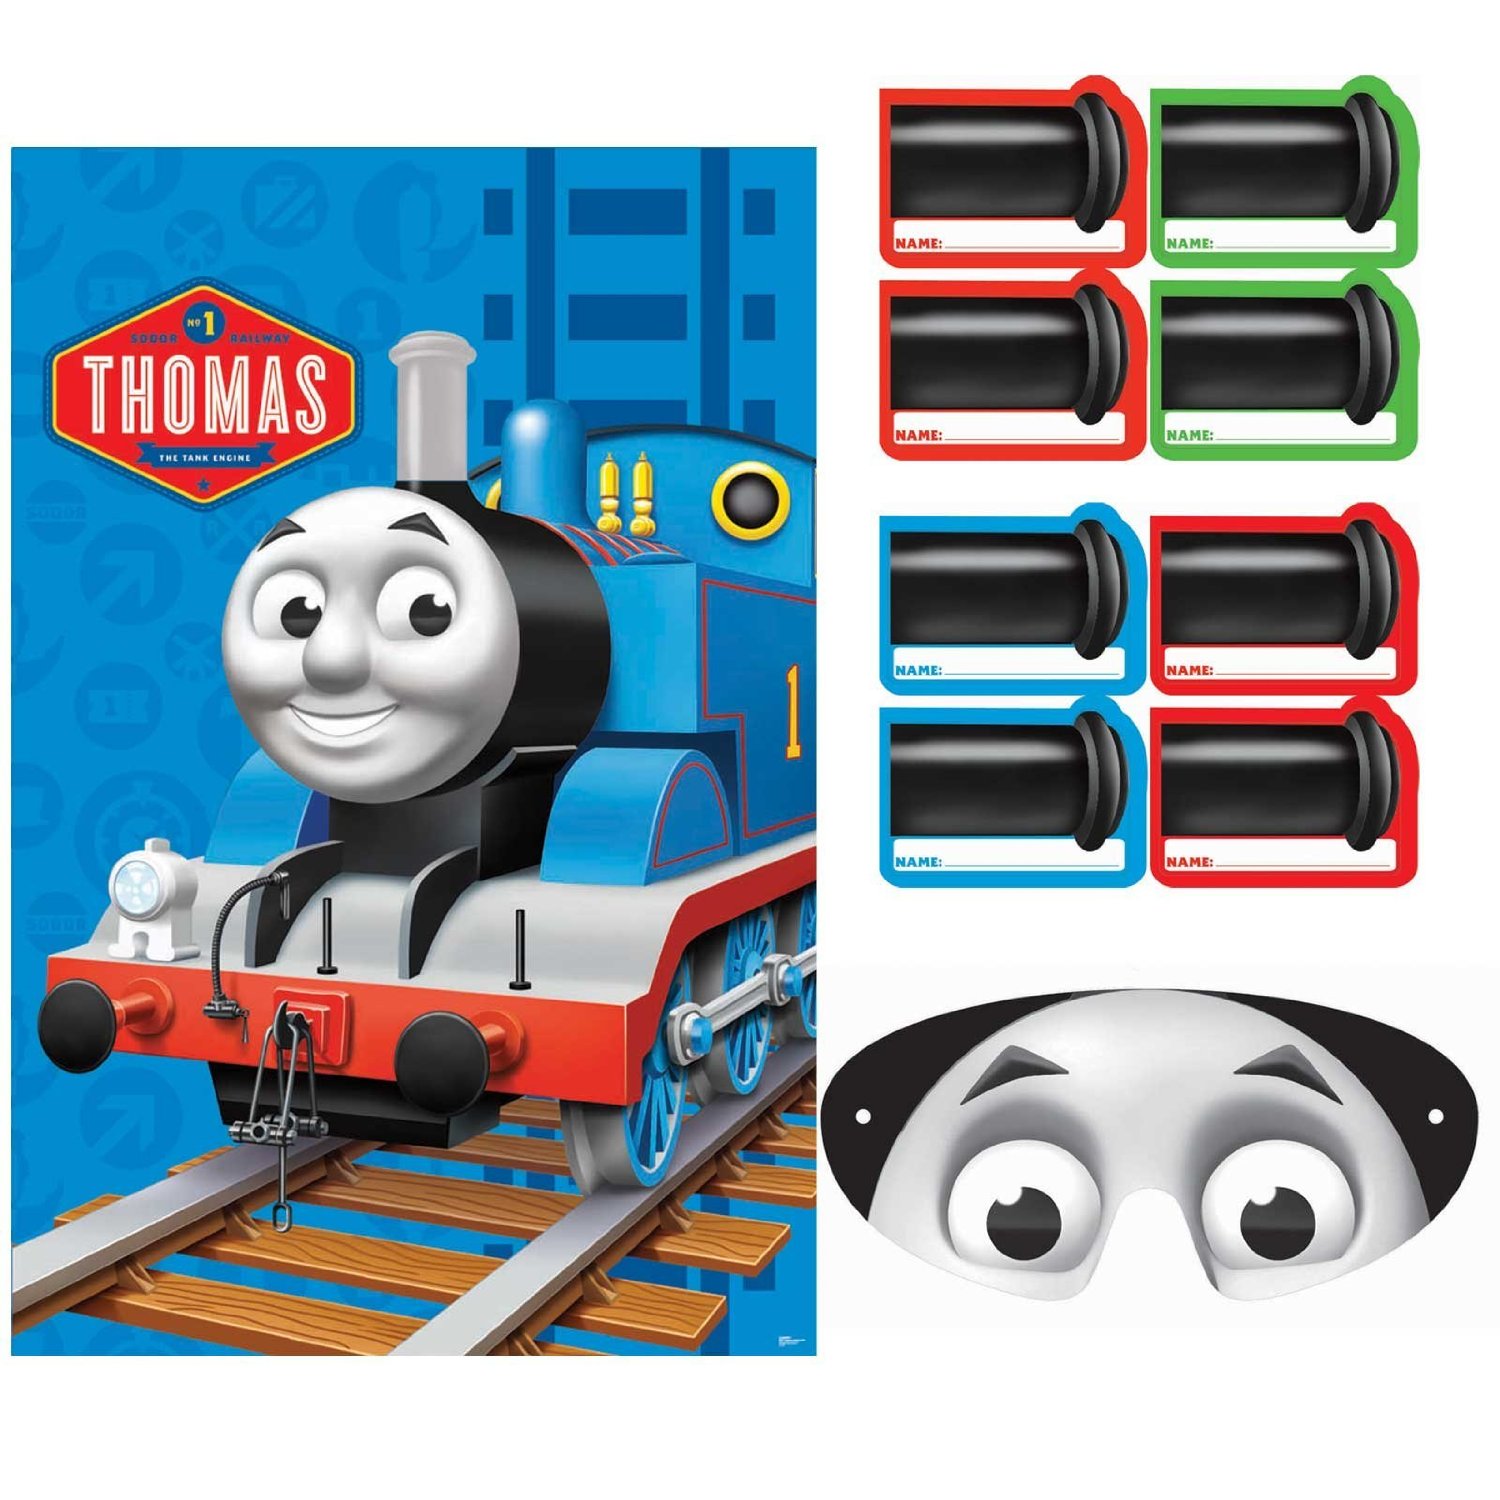 Thomas  Train Birthday Cake on Thomas The Train Birthday Party Games Pin The Number 1 On Thomas The